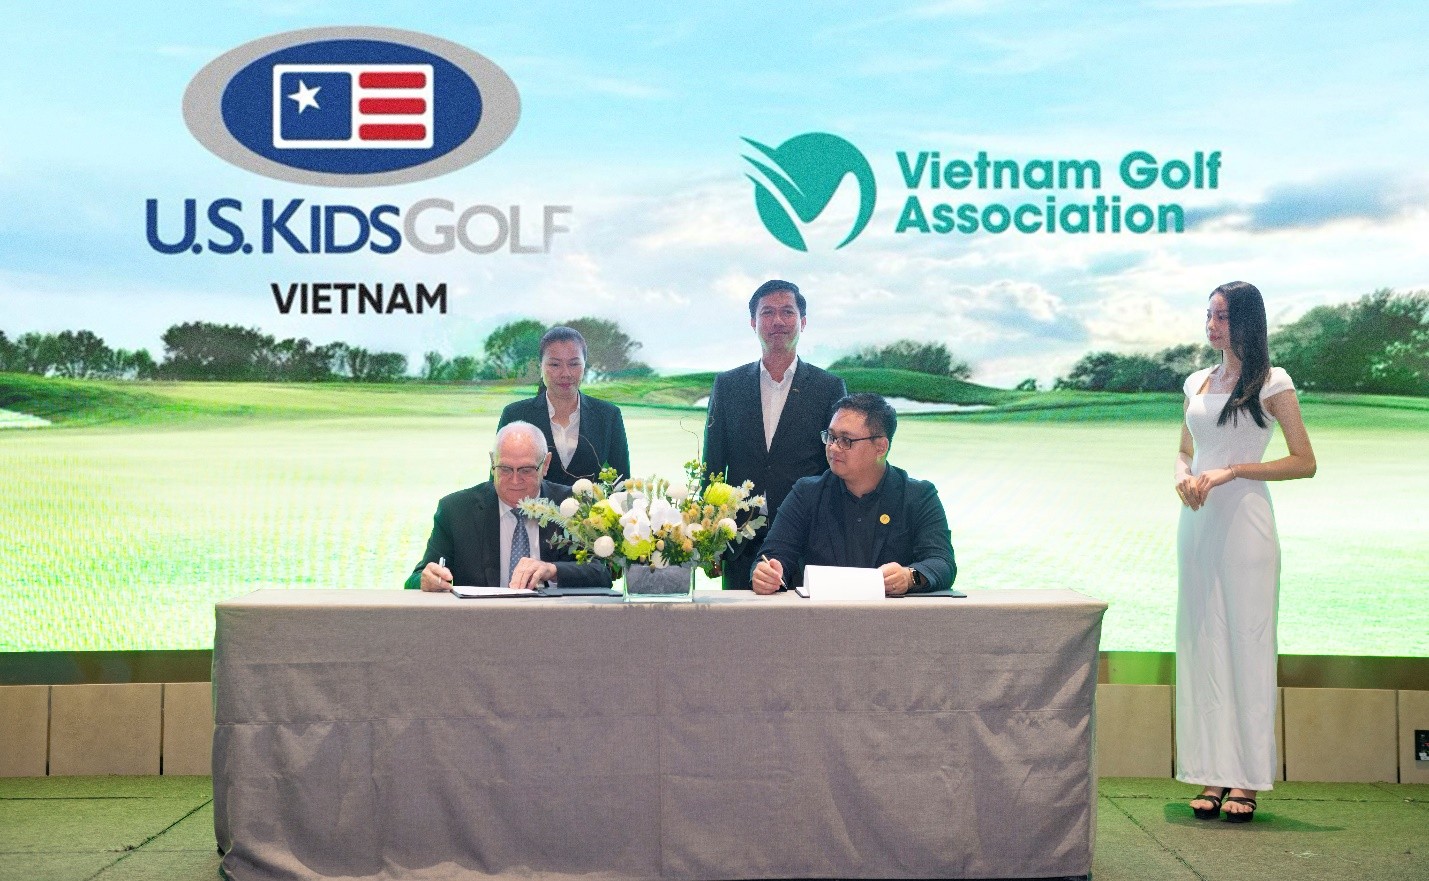 Hệ thống giải đấu Golf nổi tiếng thế giới dành cho trẻ em đã chính thức có mặt tại Việt Nam - 3